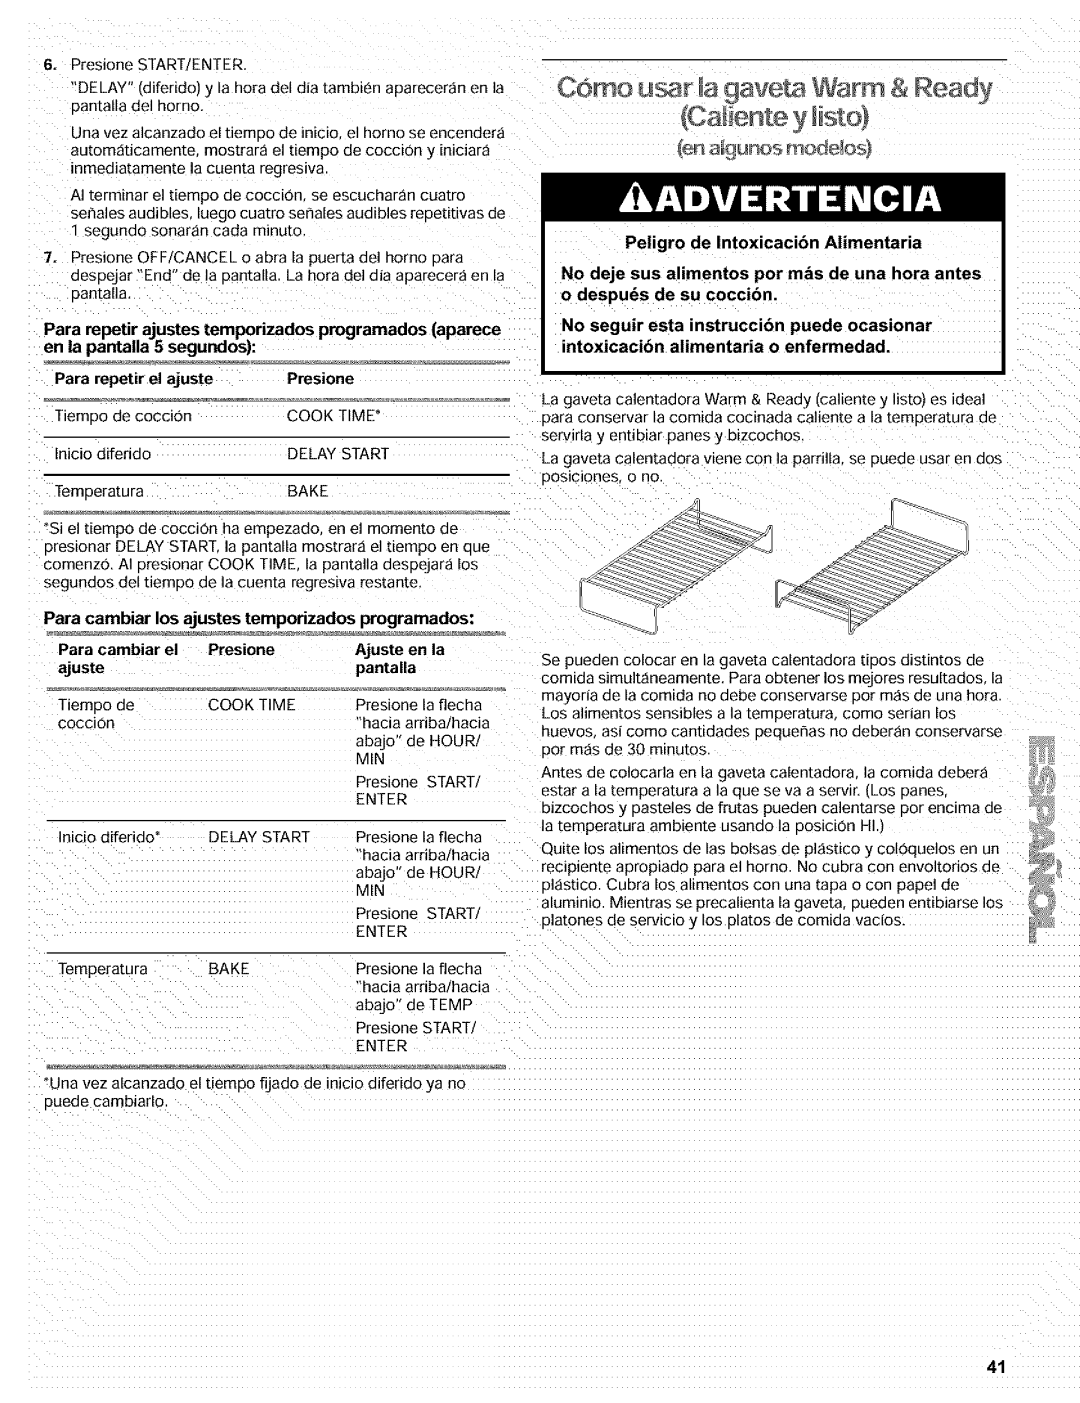 Kenmore 665.72002 manual Como usar 9aveta Warm & Read- ICa#ente, Para repetir el ajuste, Presmne 